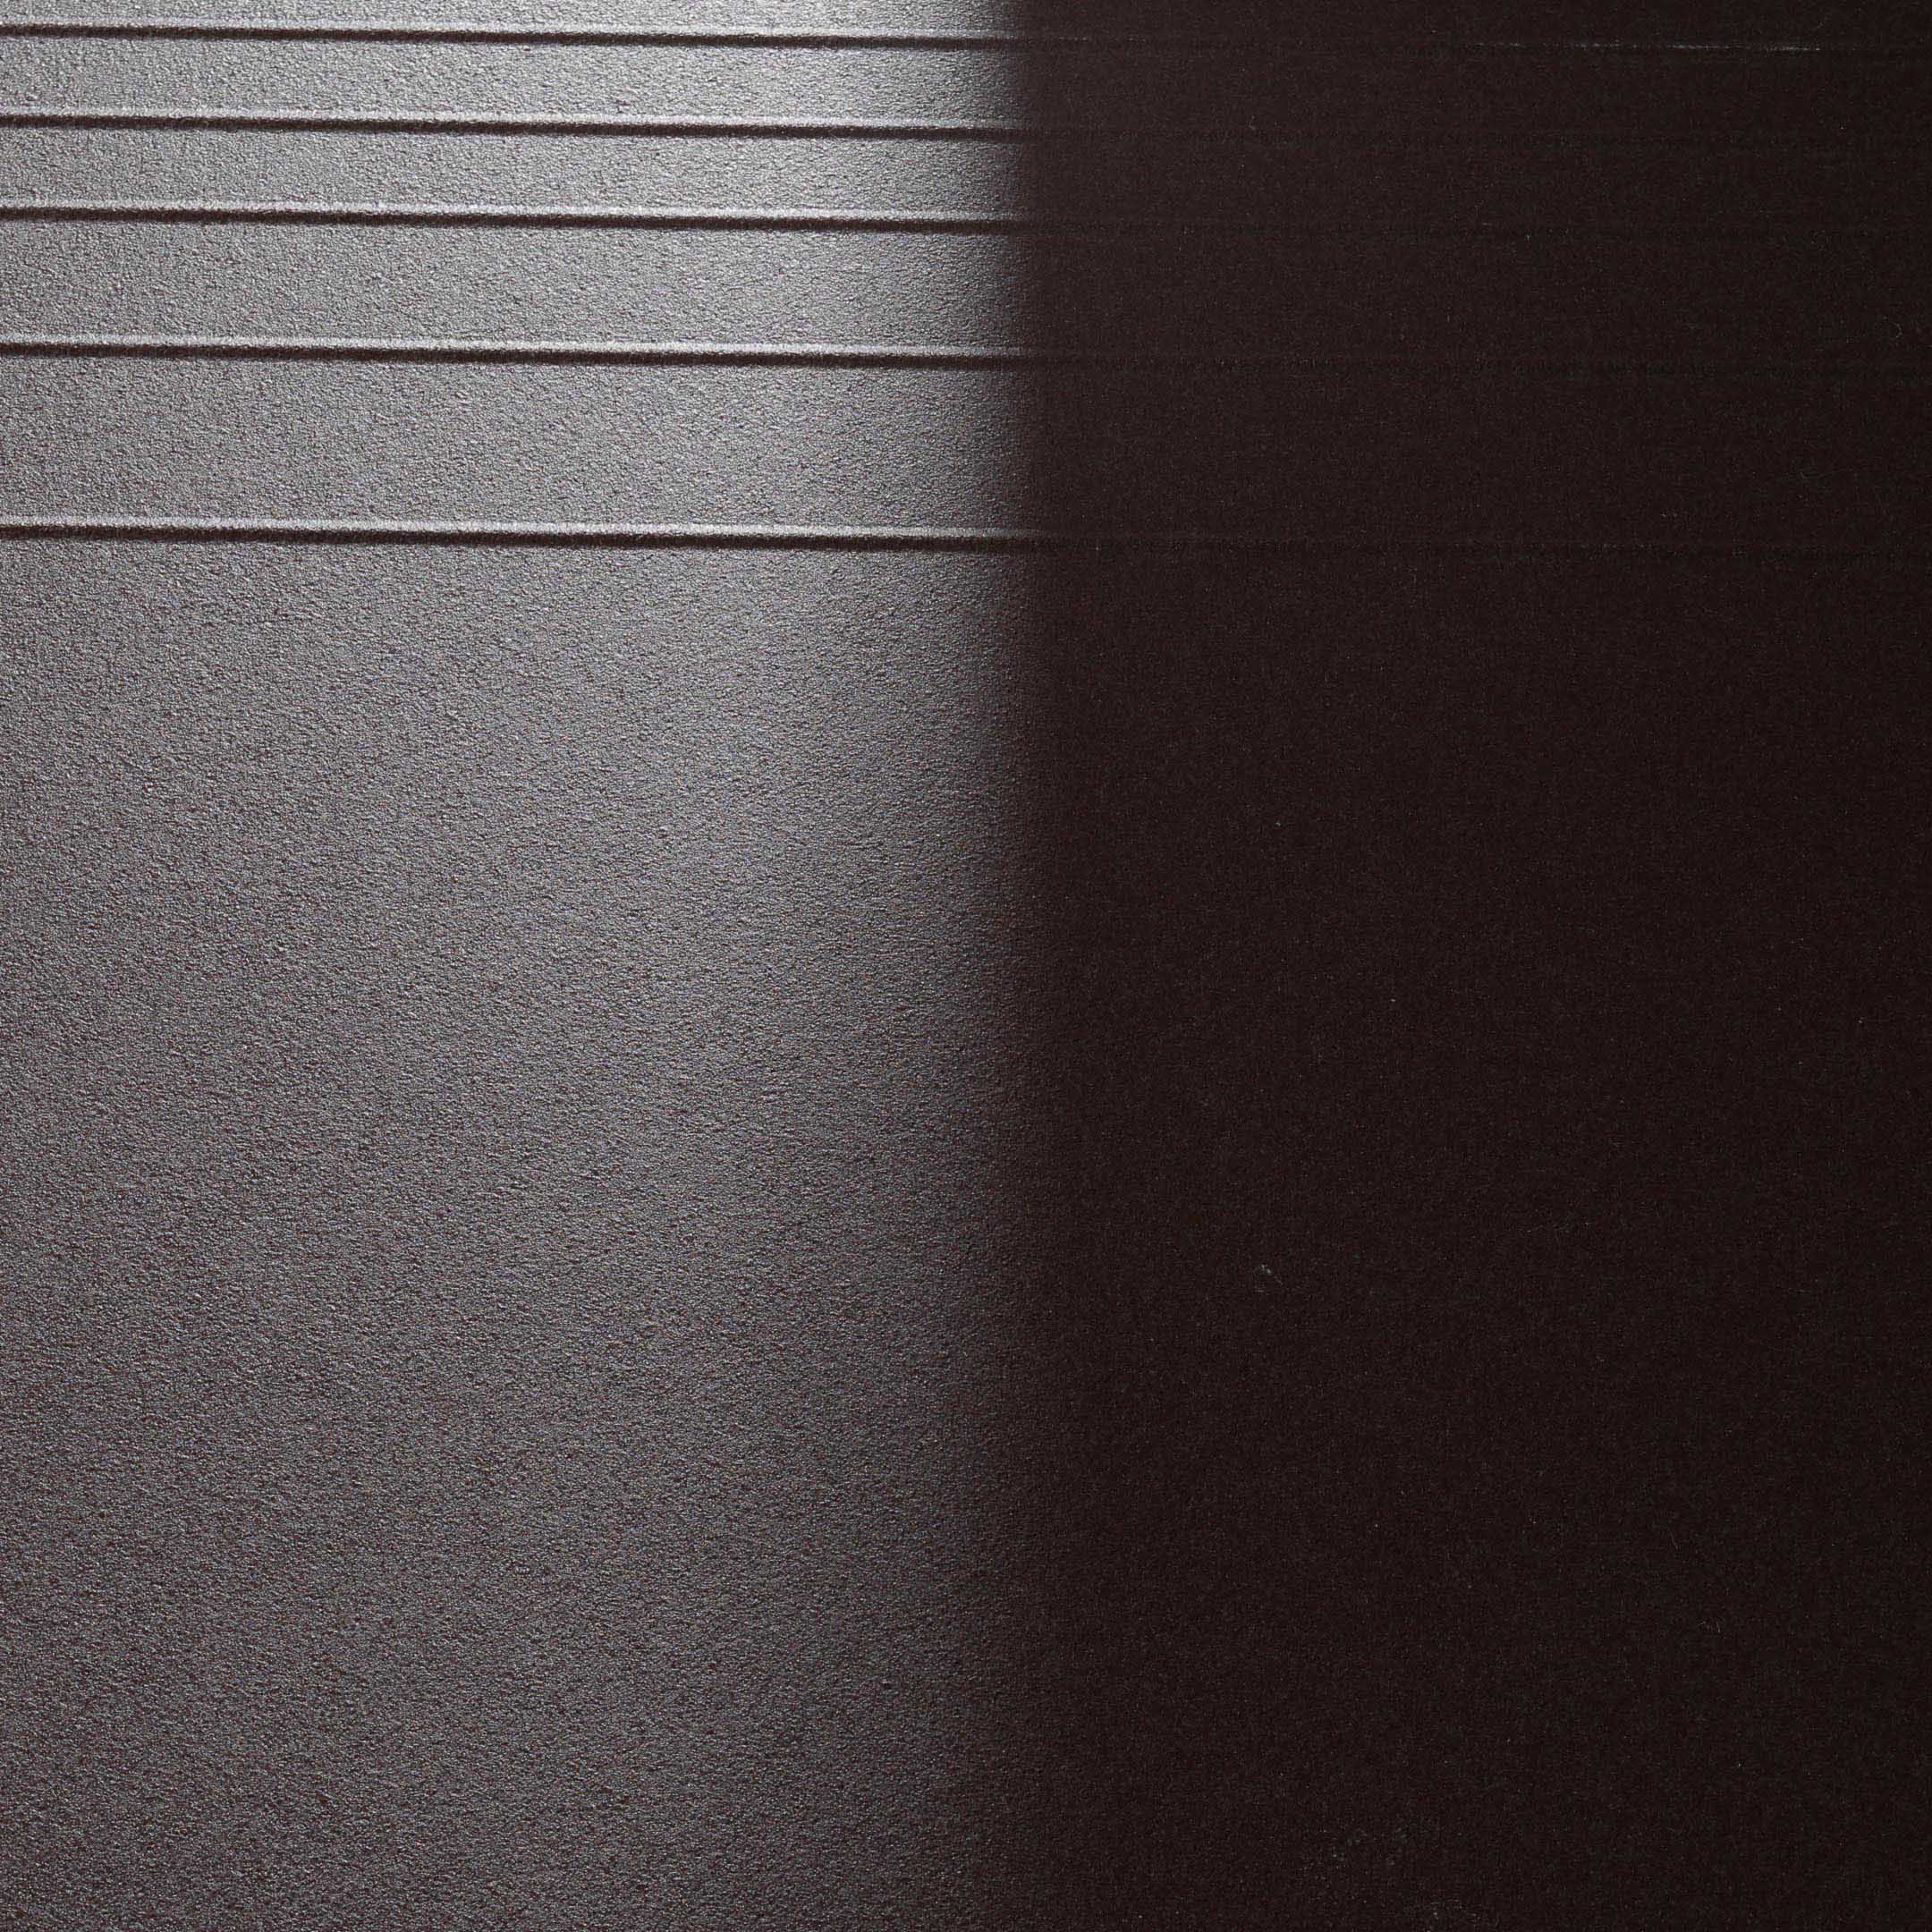 фото Керамогранит ступень керамин амстердам 4 коричневый 298x298x8 мм (15 шт.=1,33 кв.м) keramin